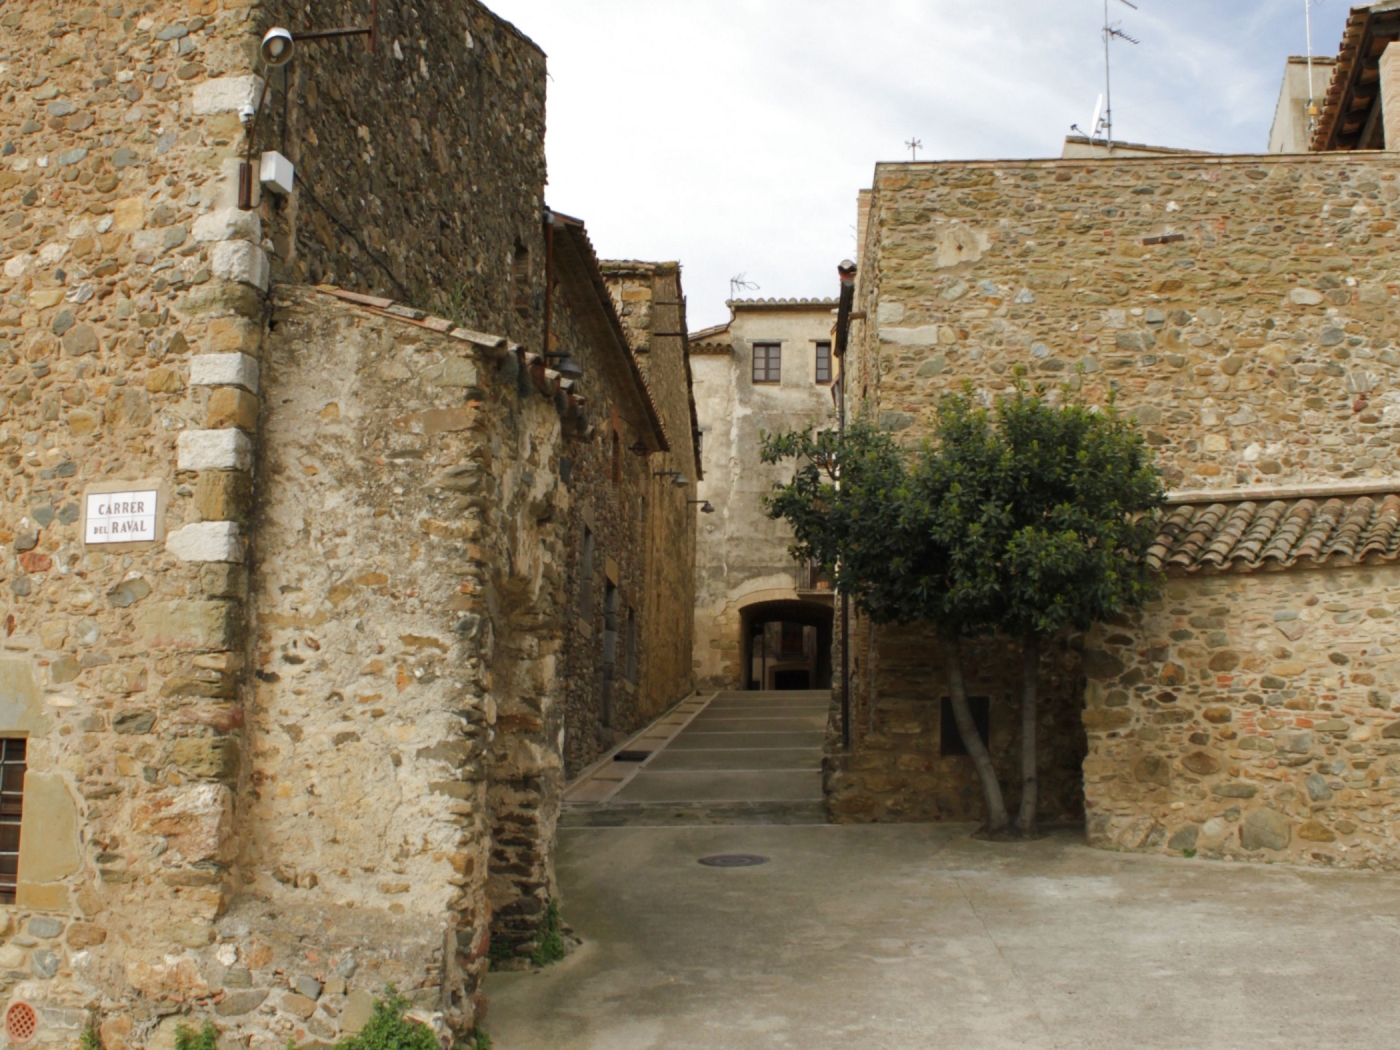 Casa Petita estil rústic de poble medieval prop de les platges a Cruïlles, Monells i Sant Sadurní de l'Heura